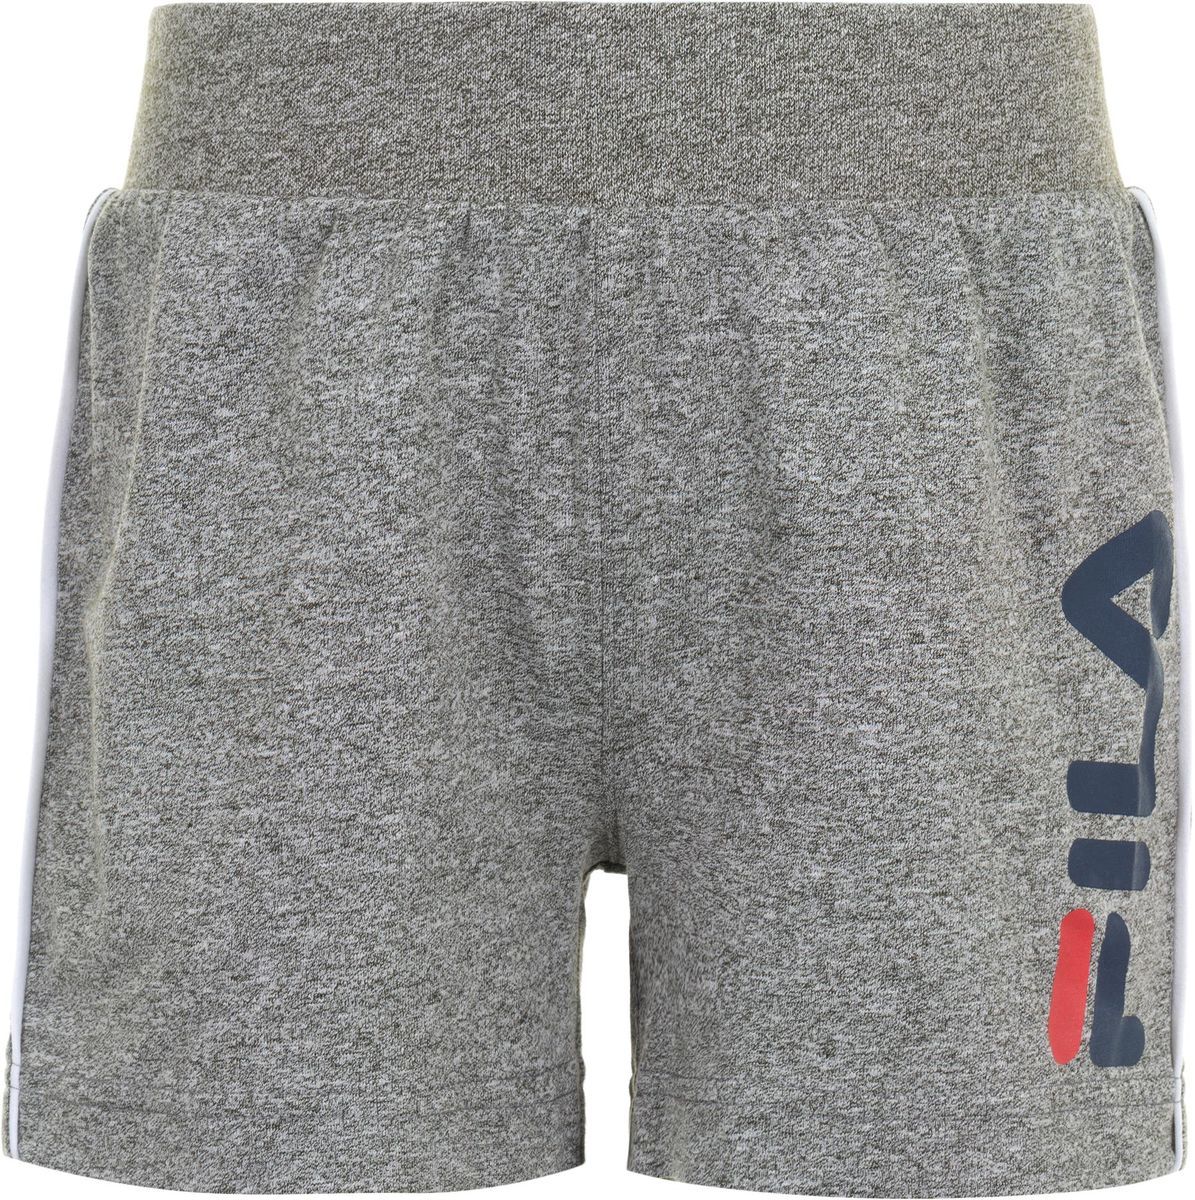    Fila Boy's Shorts, : . S19AFLSHC01-2A.  116